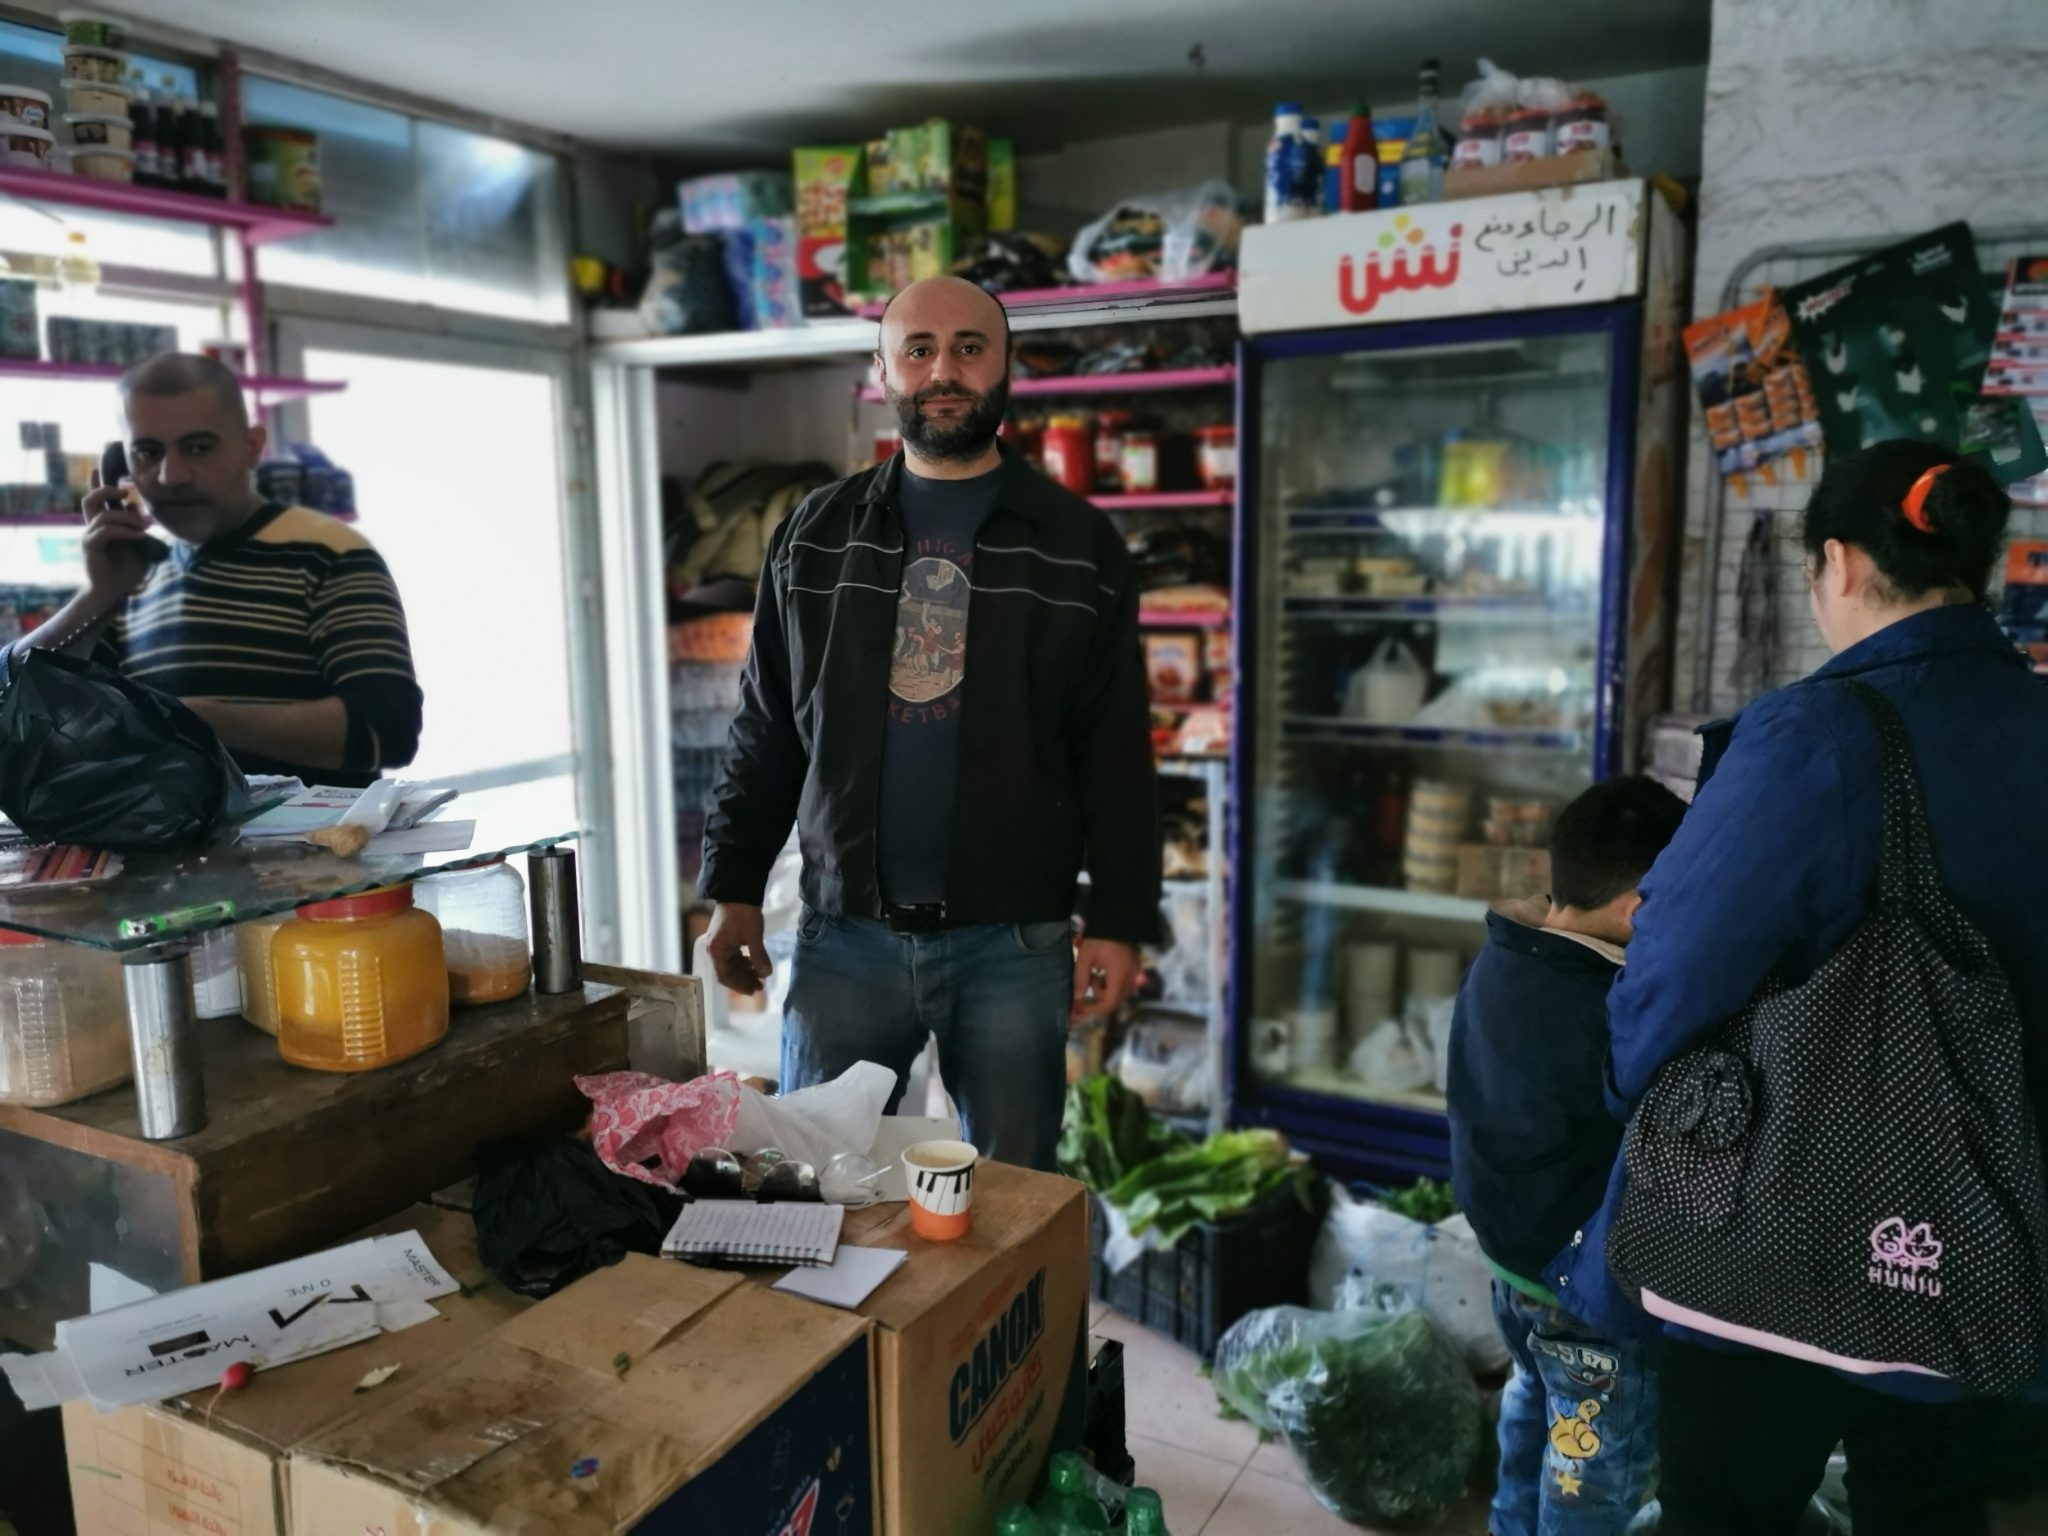 Ihmisiä syyrialaisessa kaupassa. Edustalla tiski ja pahvilaatikoita, taustalla kaupan hyllyjä ja jääkaappi, lattialla koreissa vihanneksia.